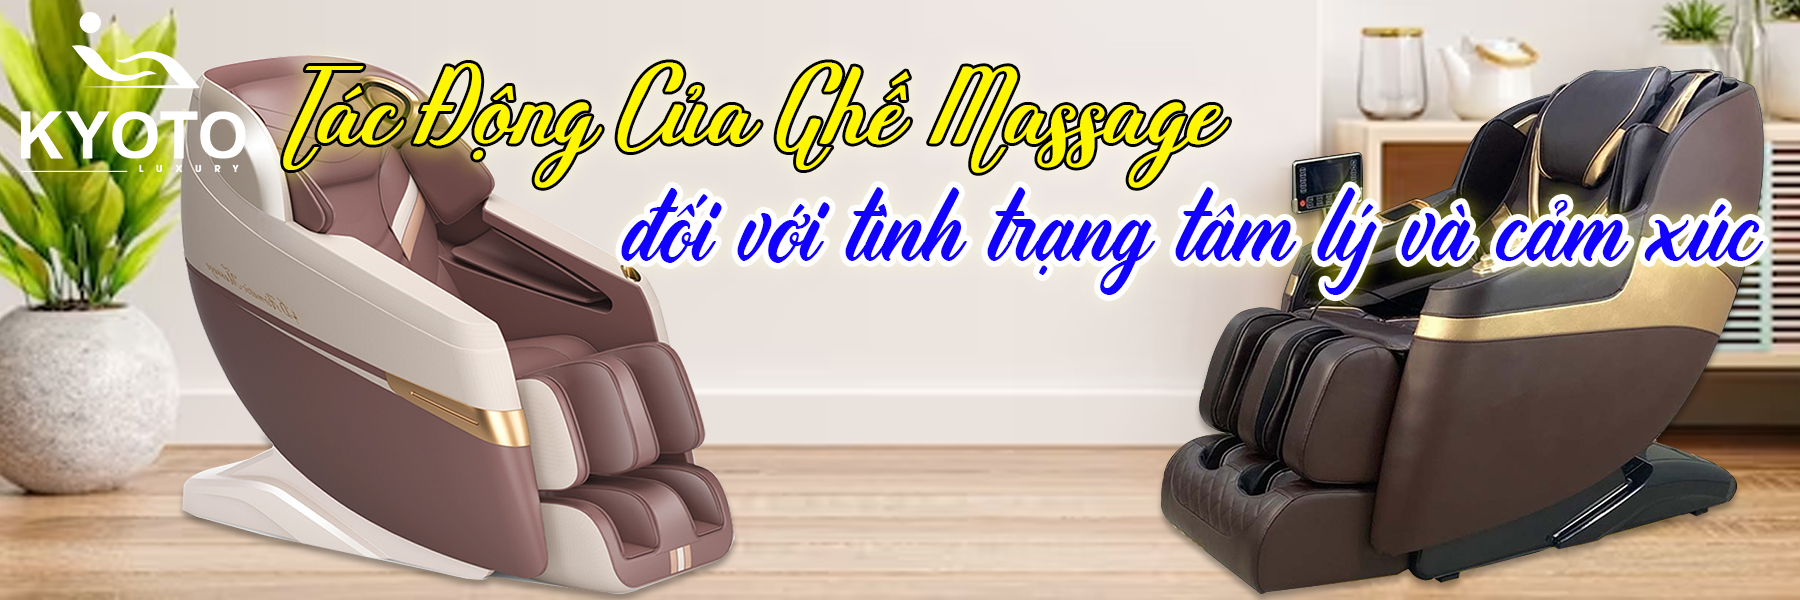 Tác động của ghế massage đối với tình trạng tâm lý và cảm xúc